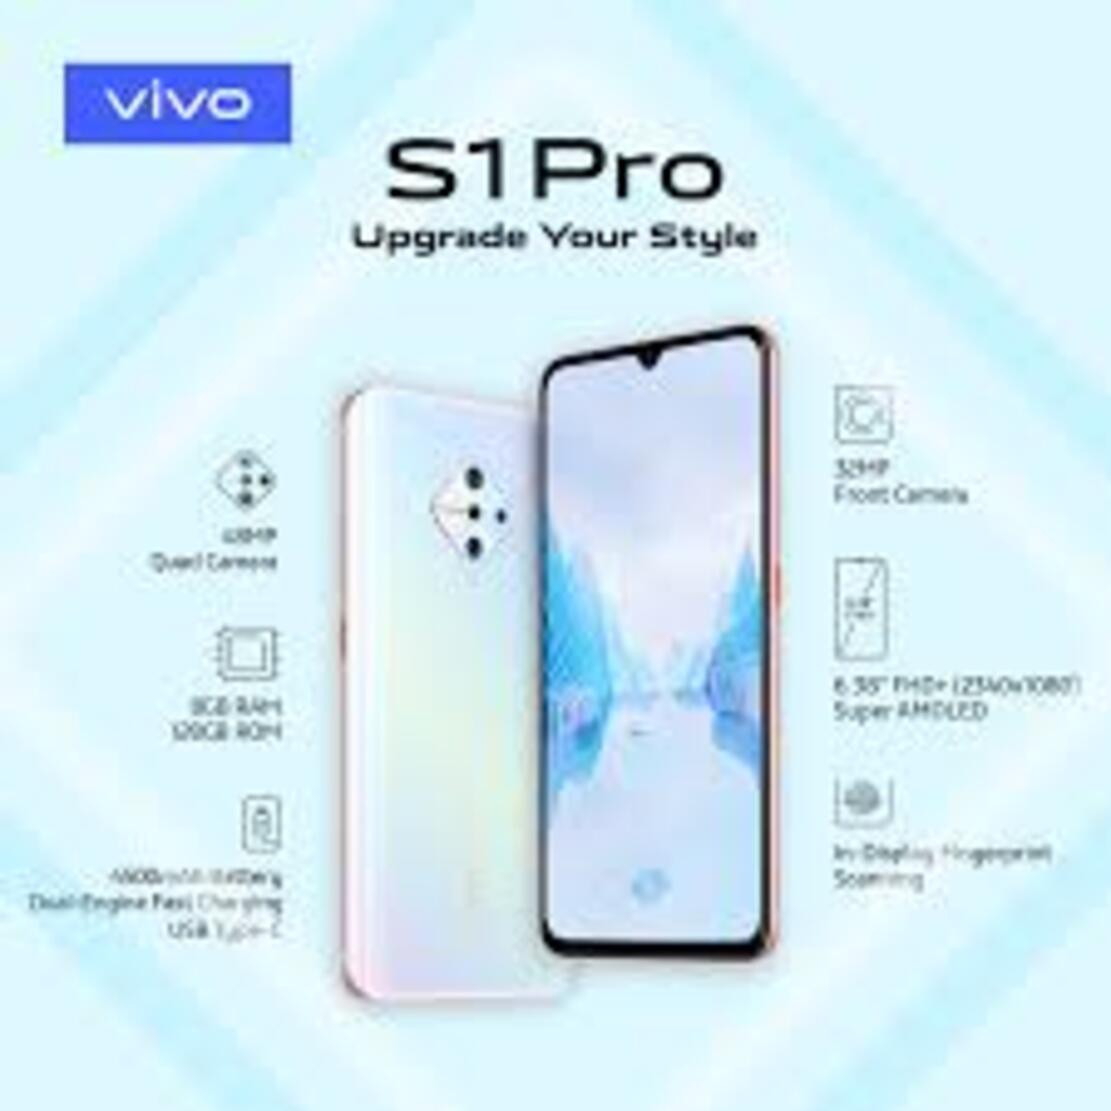 điện thoại Chính Hãng giá rẻ dành cho học sinh sinh viên Vivo S1 Pro máy